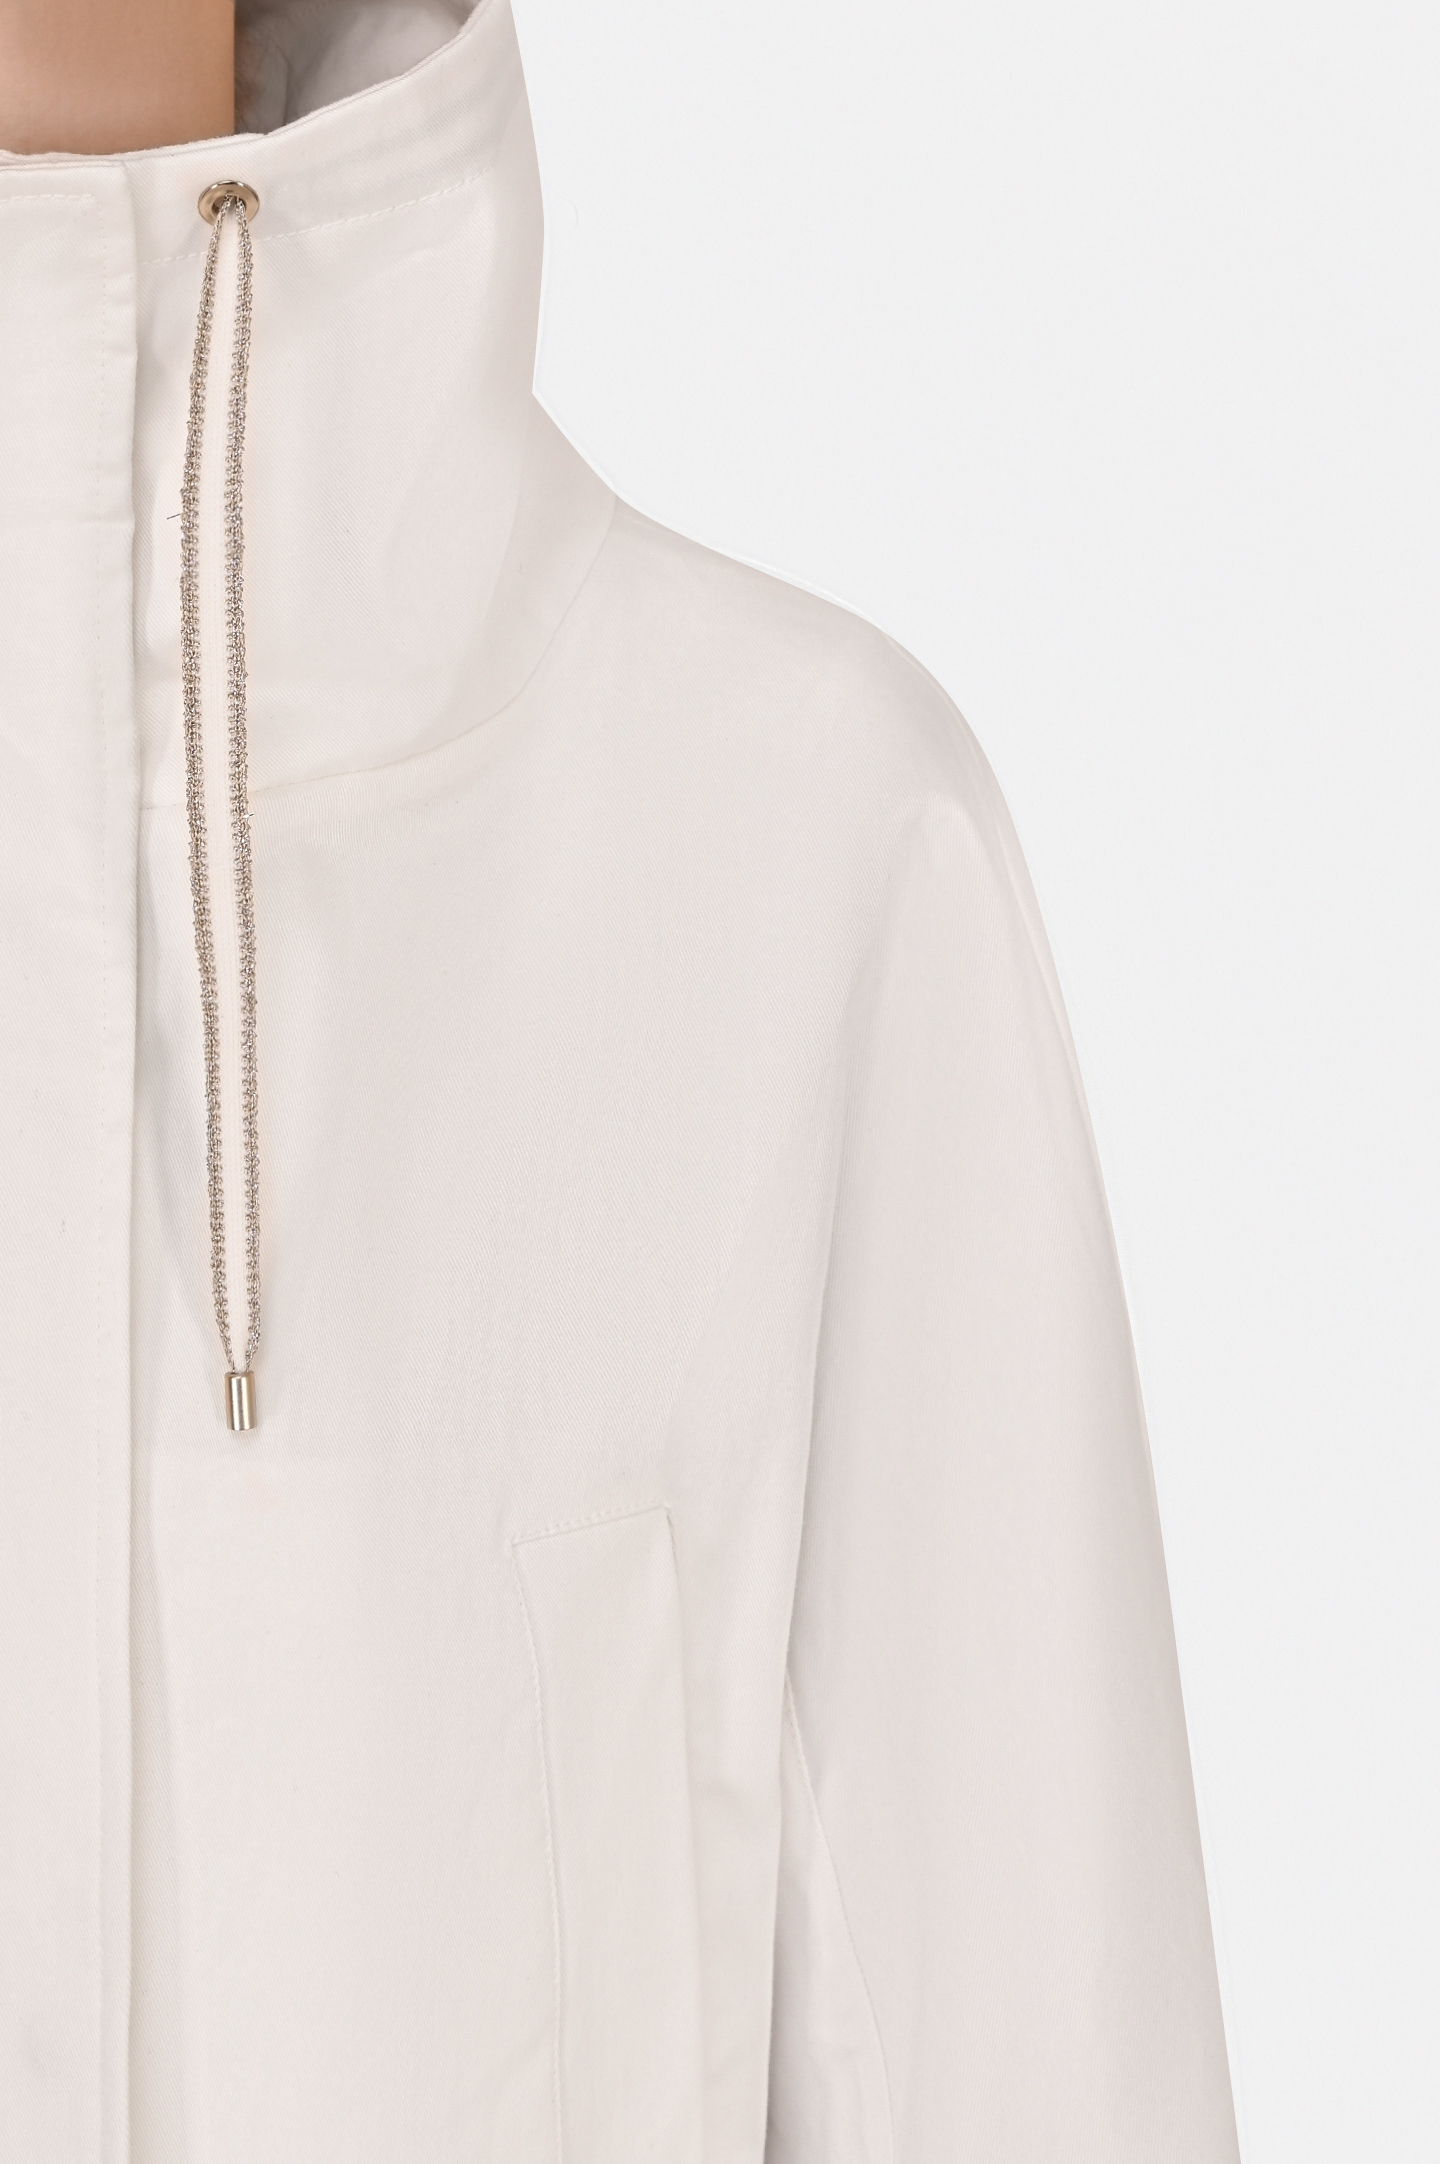 Куртка LORENA ANTONIAZZI P2221CP6A, цвет: Белый, Женский